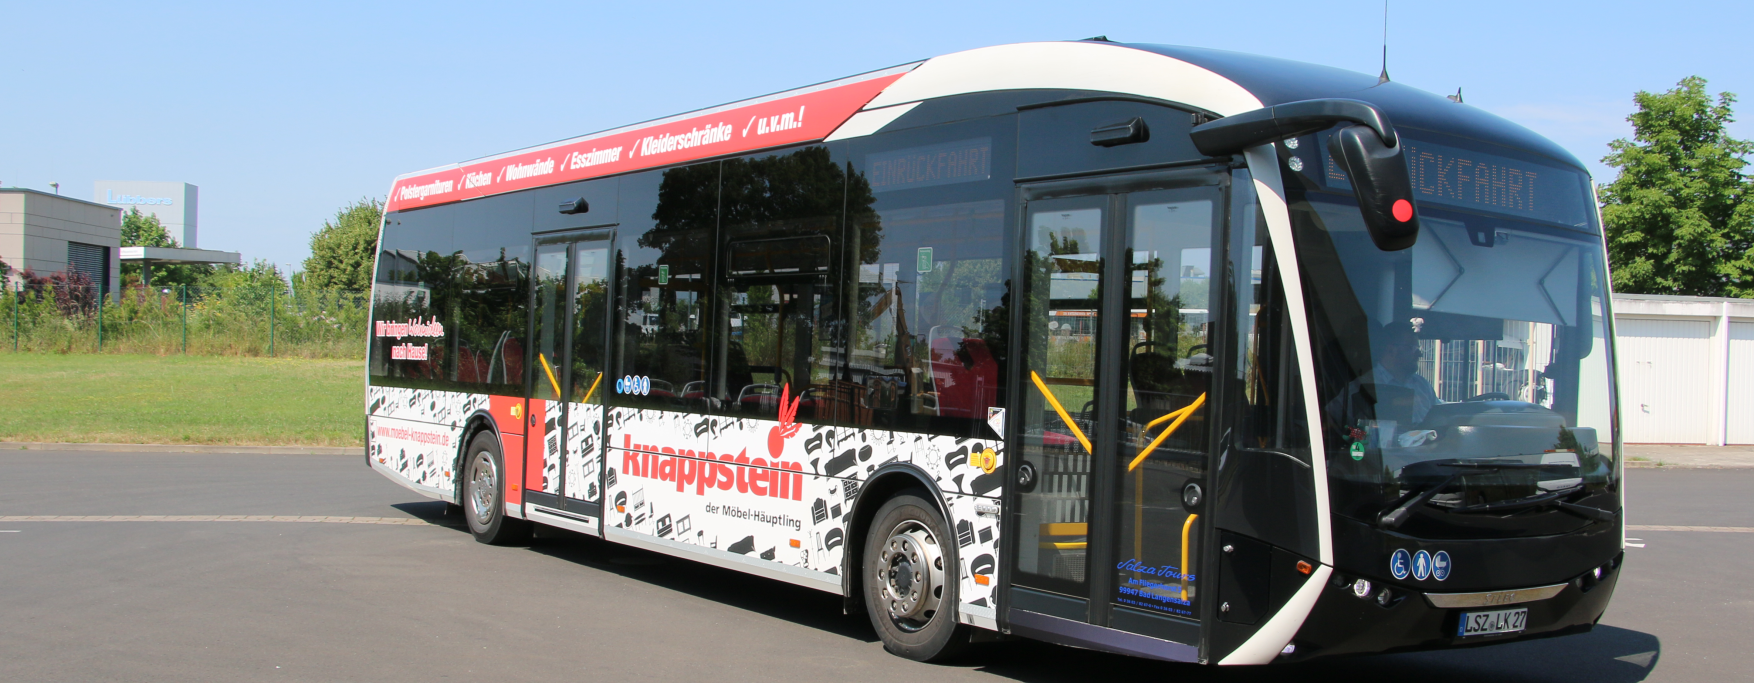 Auf dem Bild: Der Elektrobus der Firma Salza-Tours König, der mithilfe einer Förderung im Jahr 2019 angeschafft wurde.